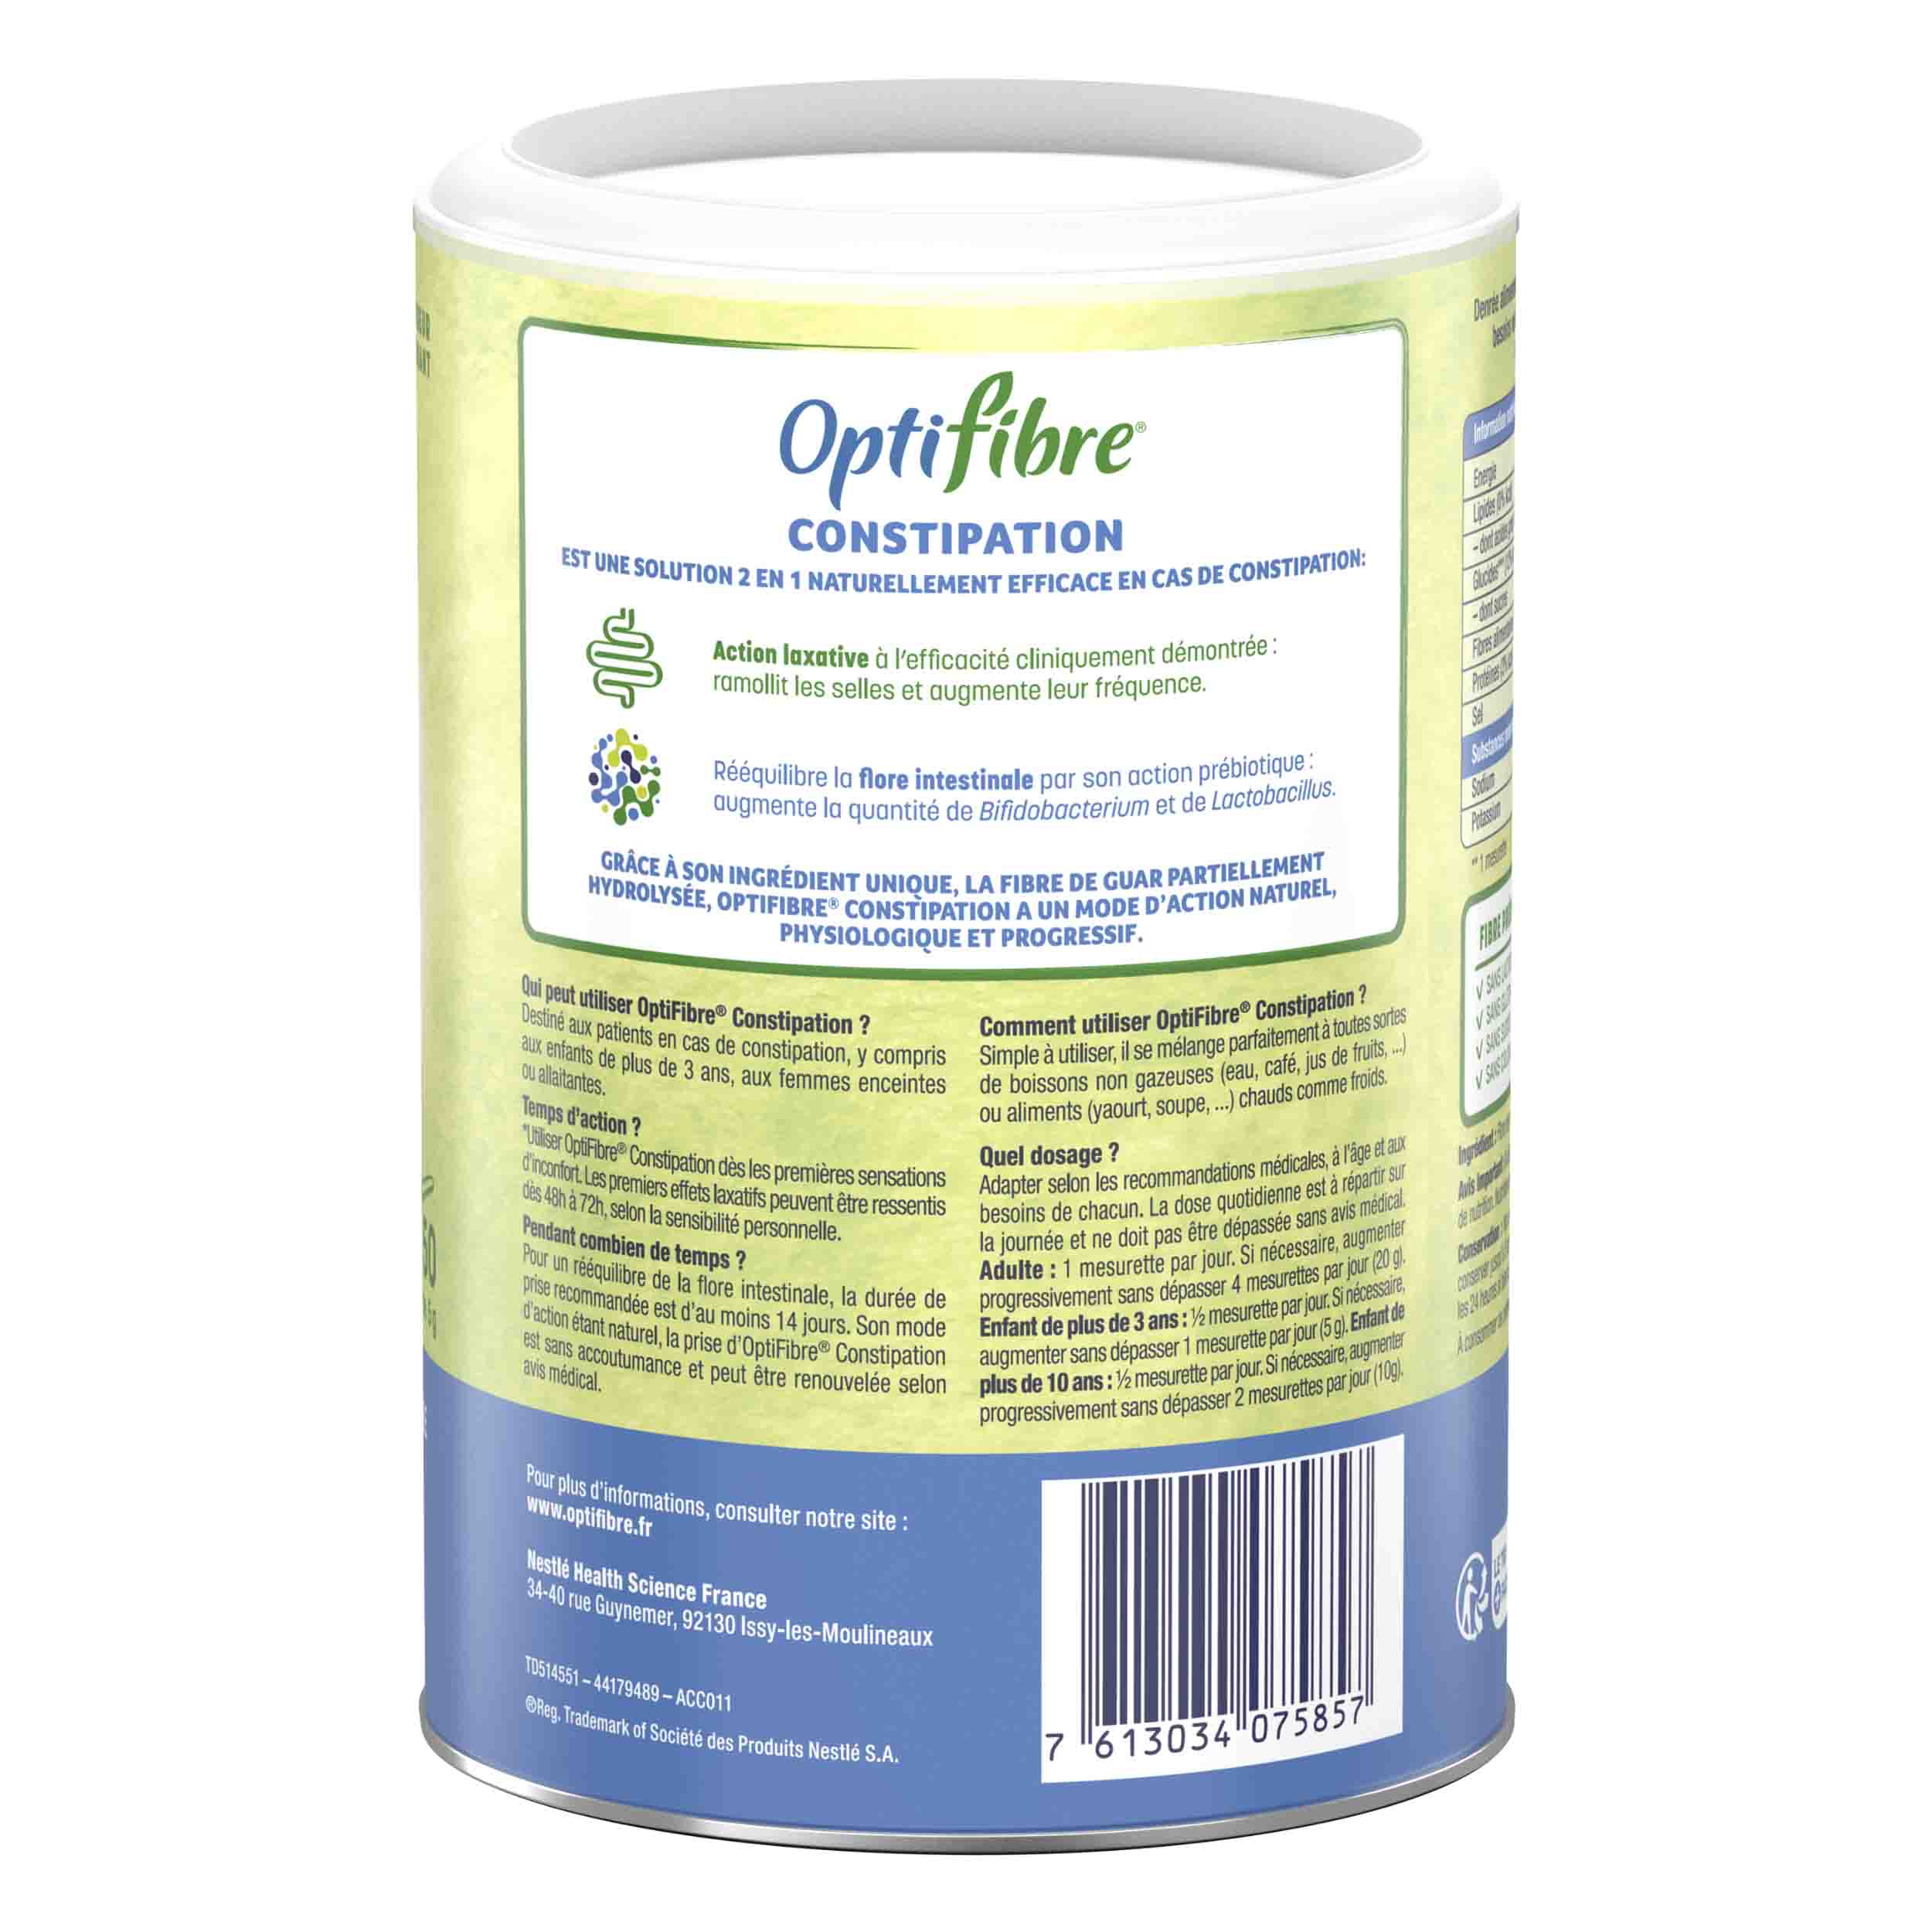 OptiFibre Constipation, une denrée alimentaire en cas de constipation